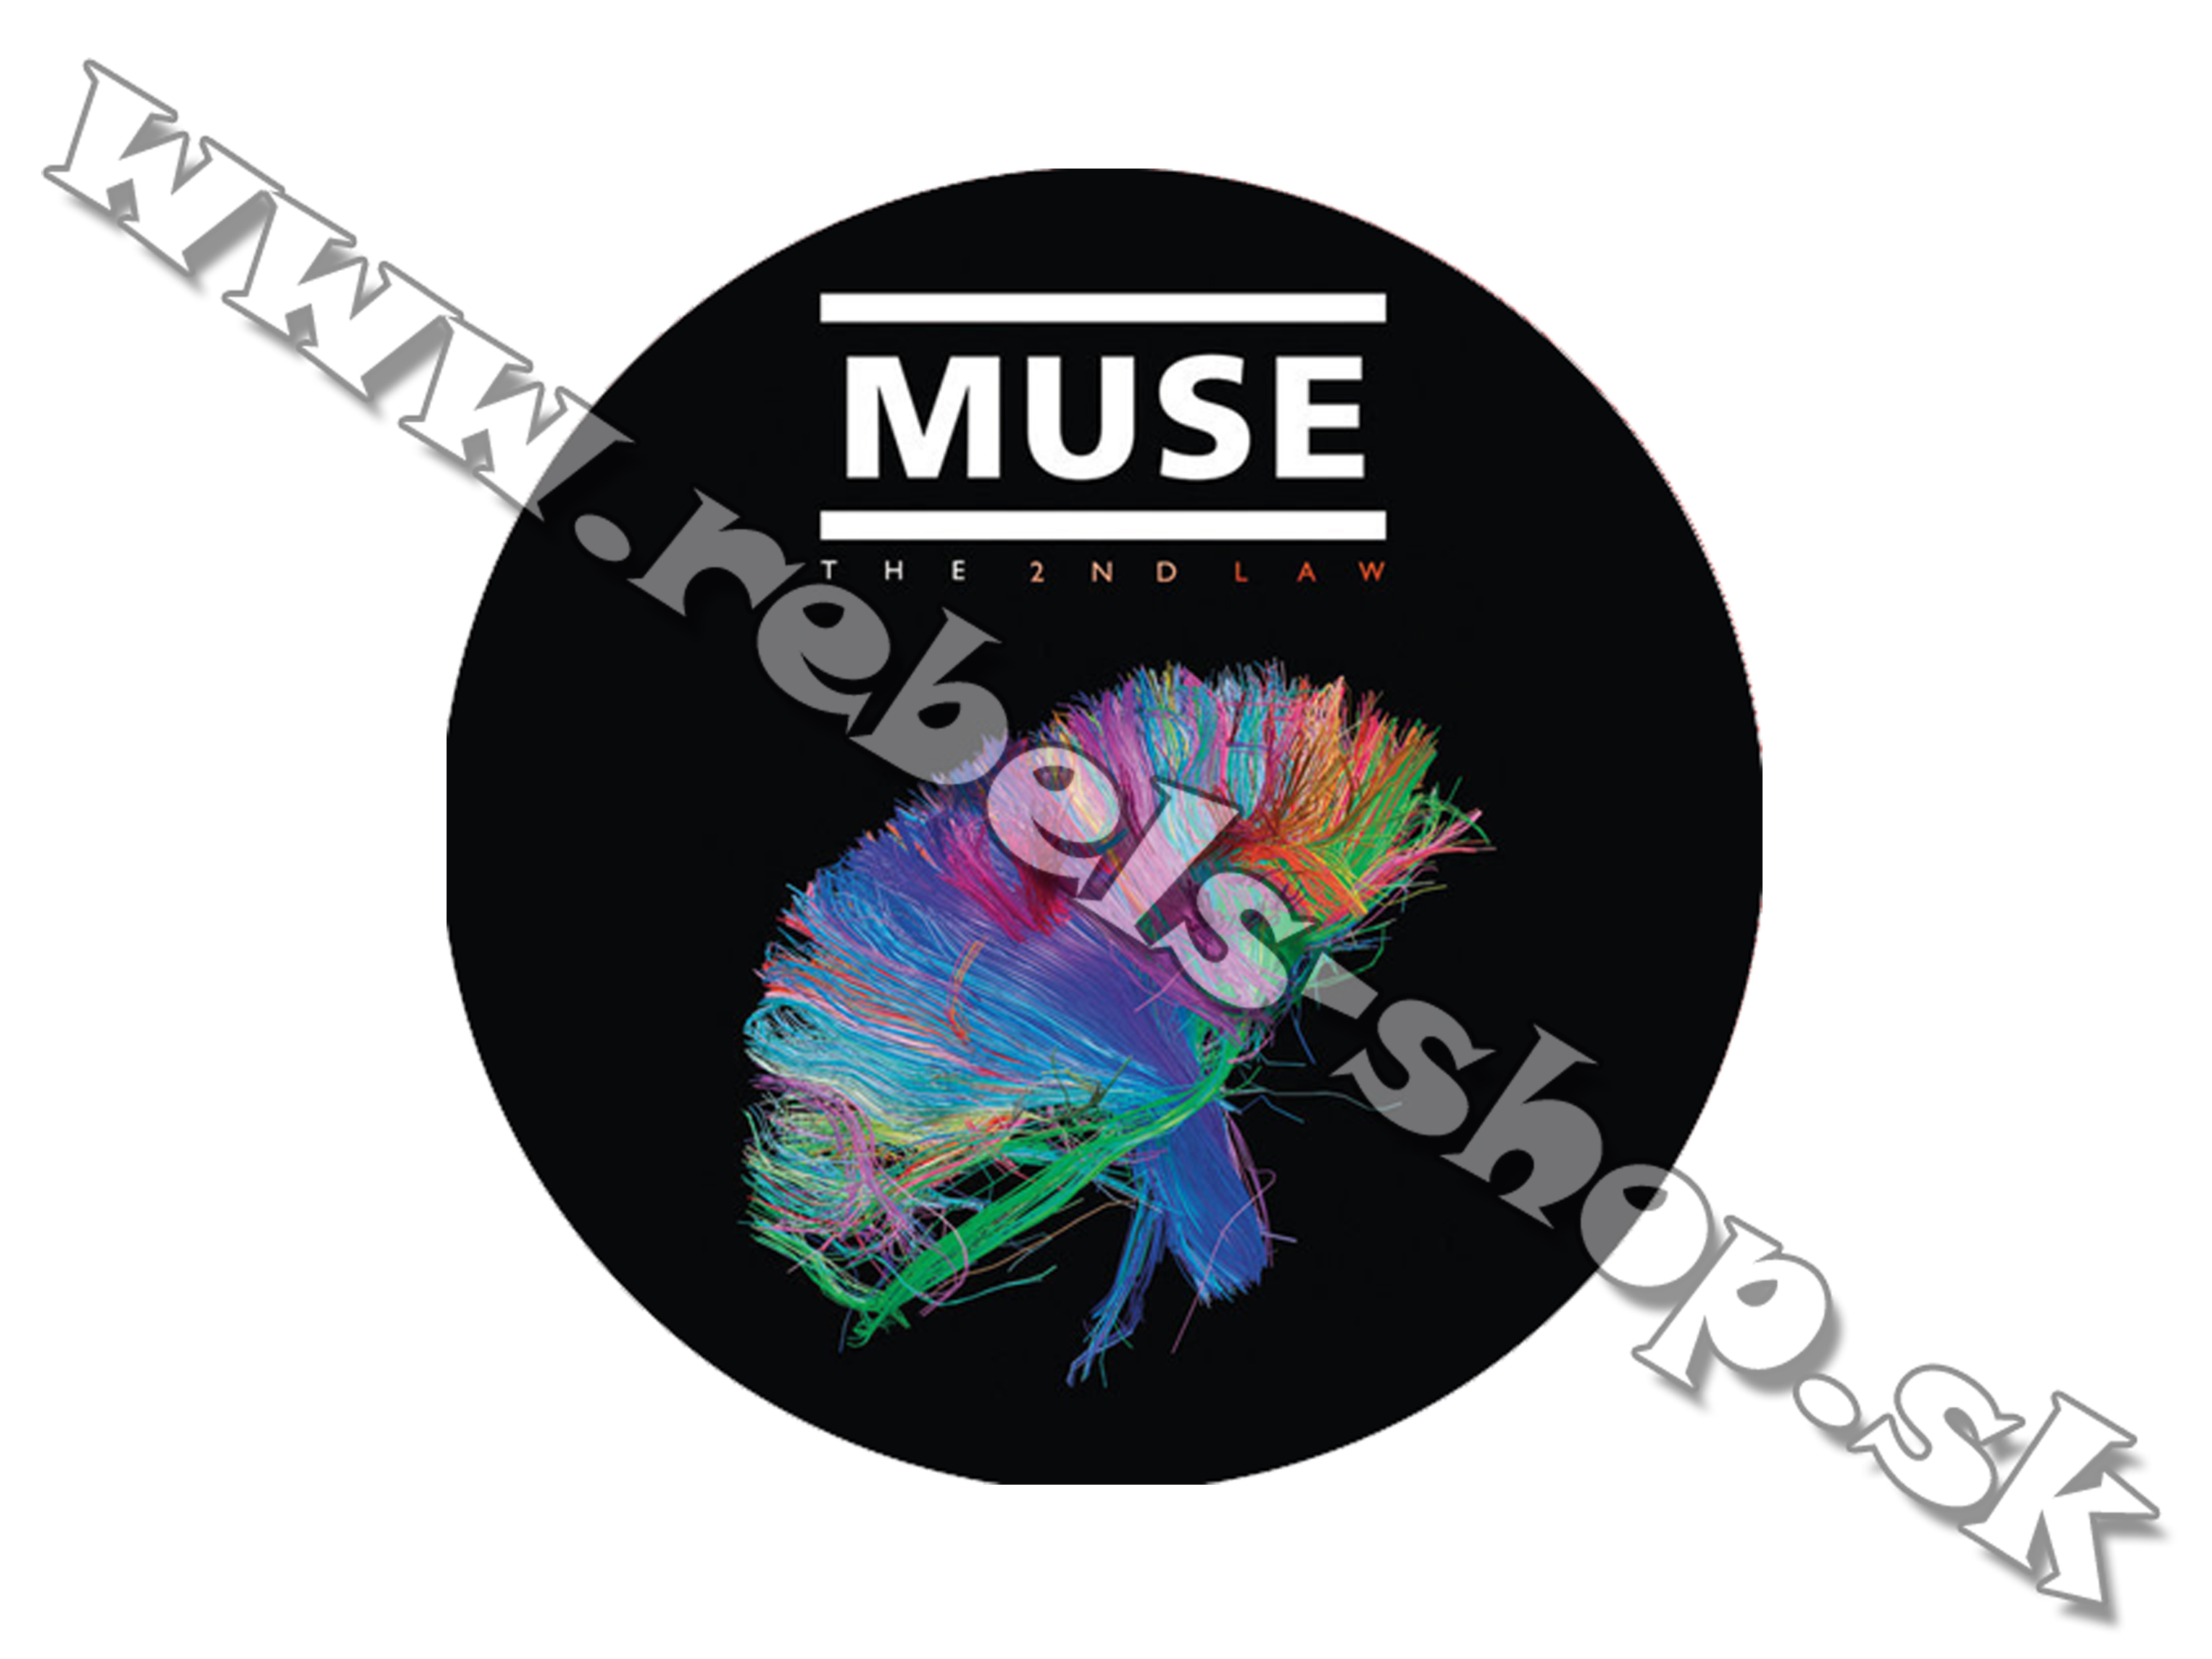 Odznak "Muse"